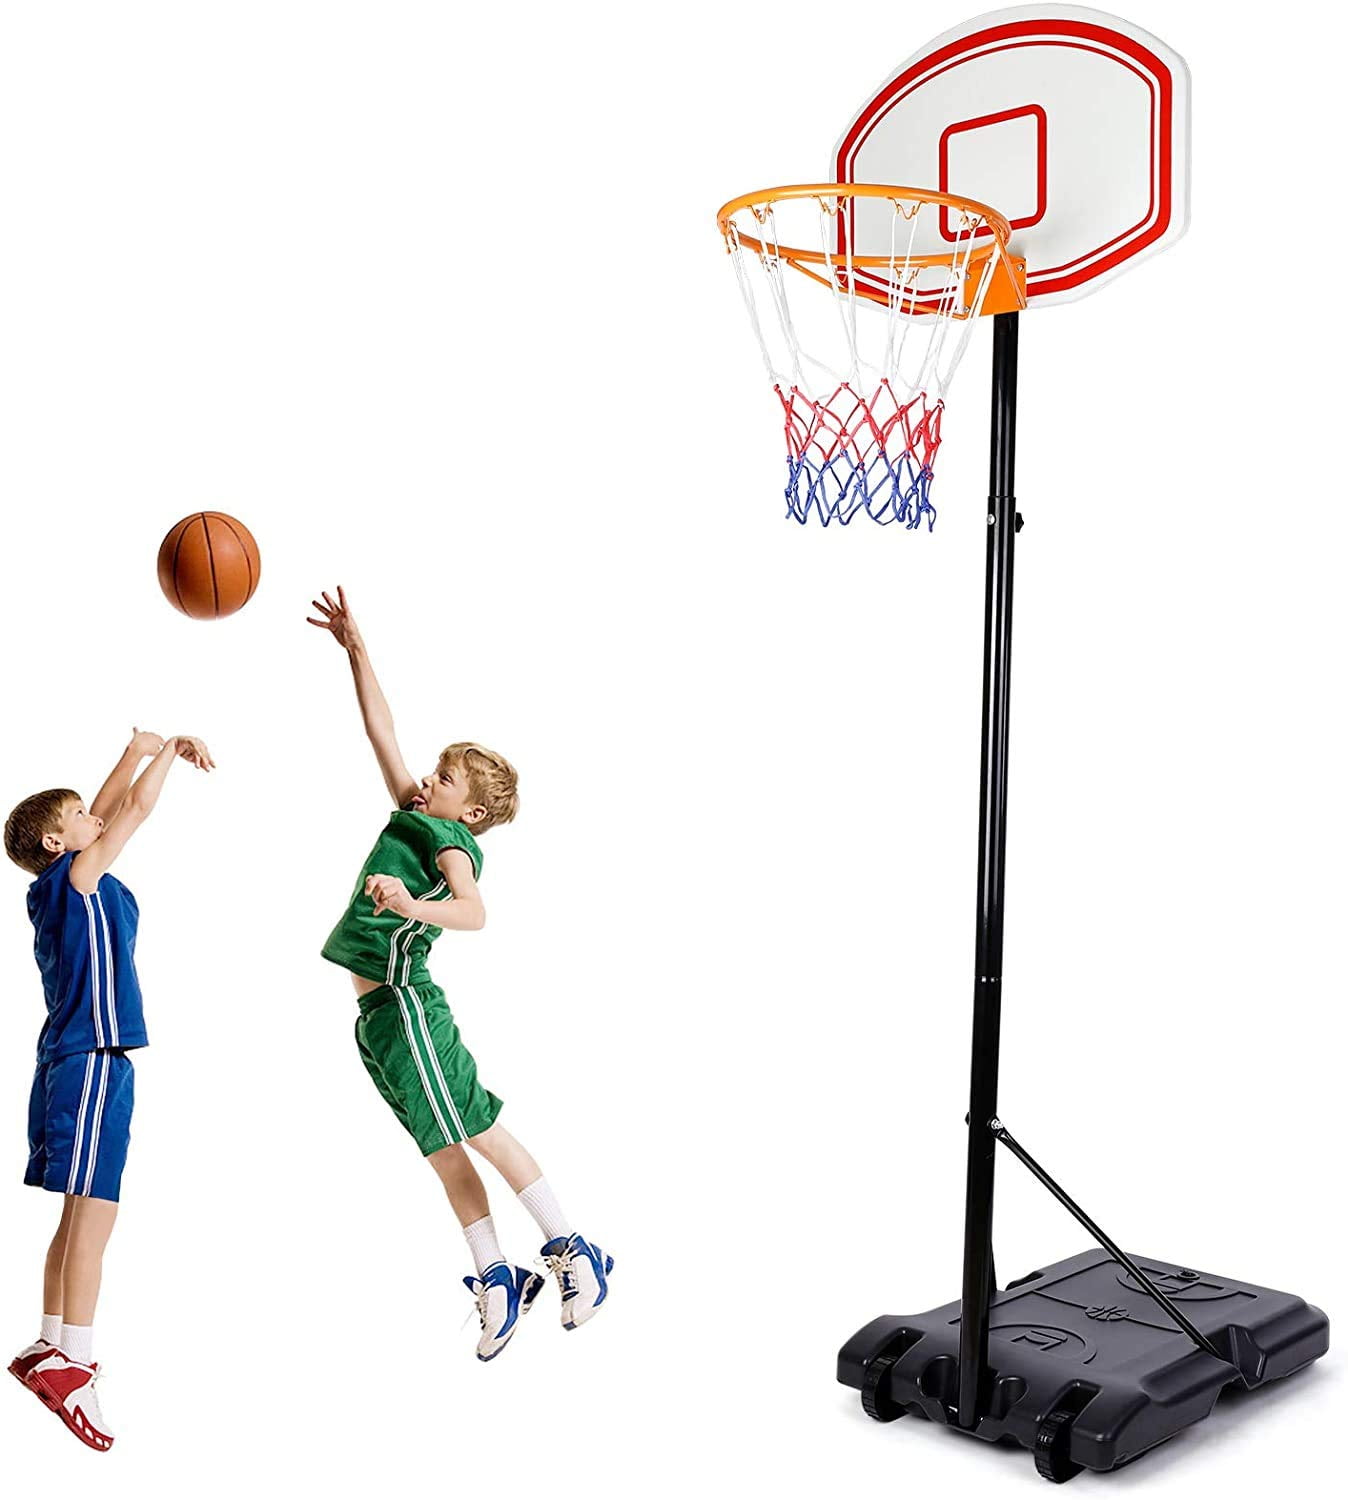 1.7M Kids Adjustable Basketball Backboard Stand & Hoop Set For Kids Training Hot 